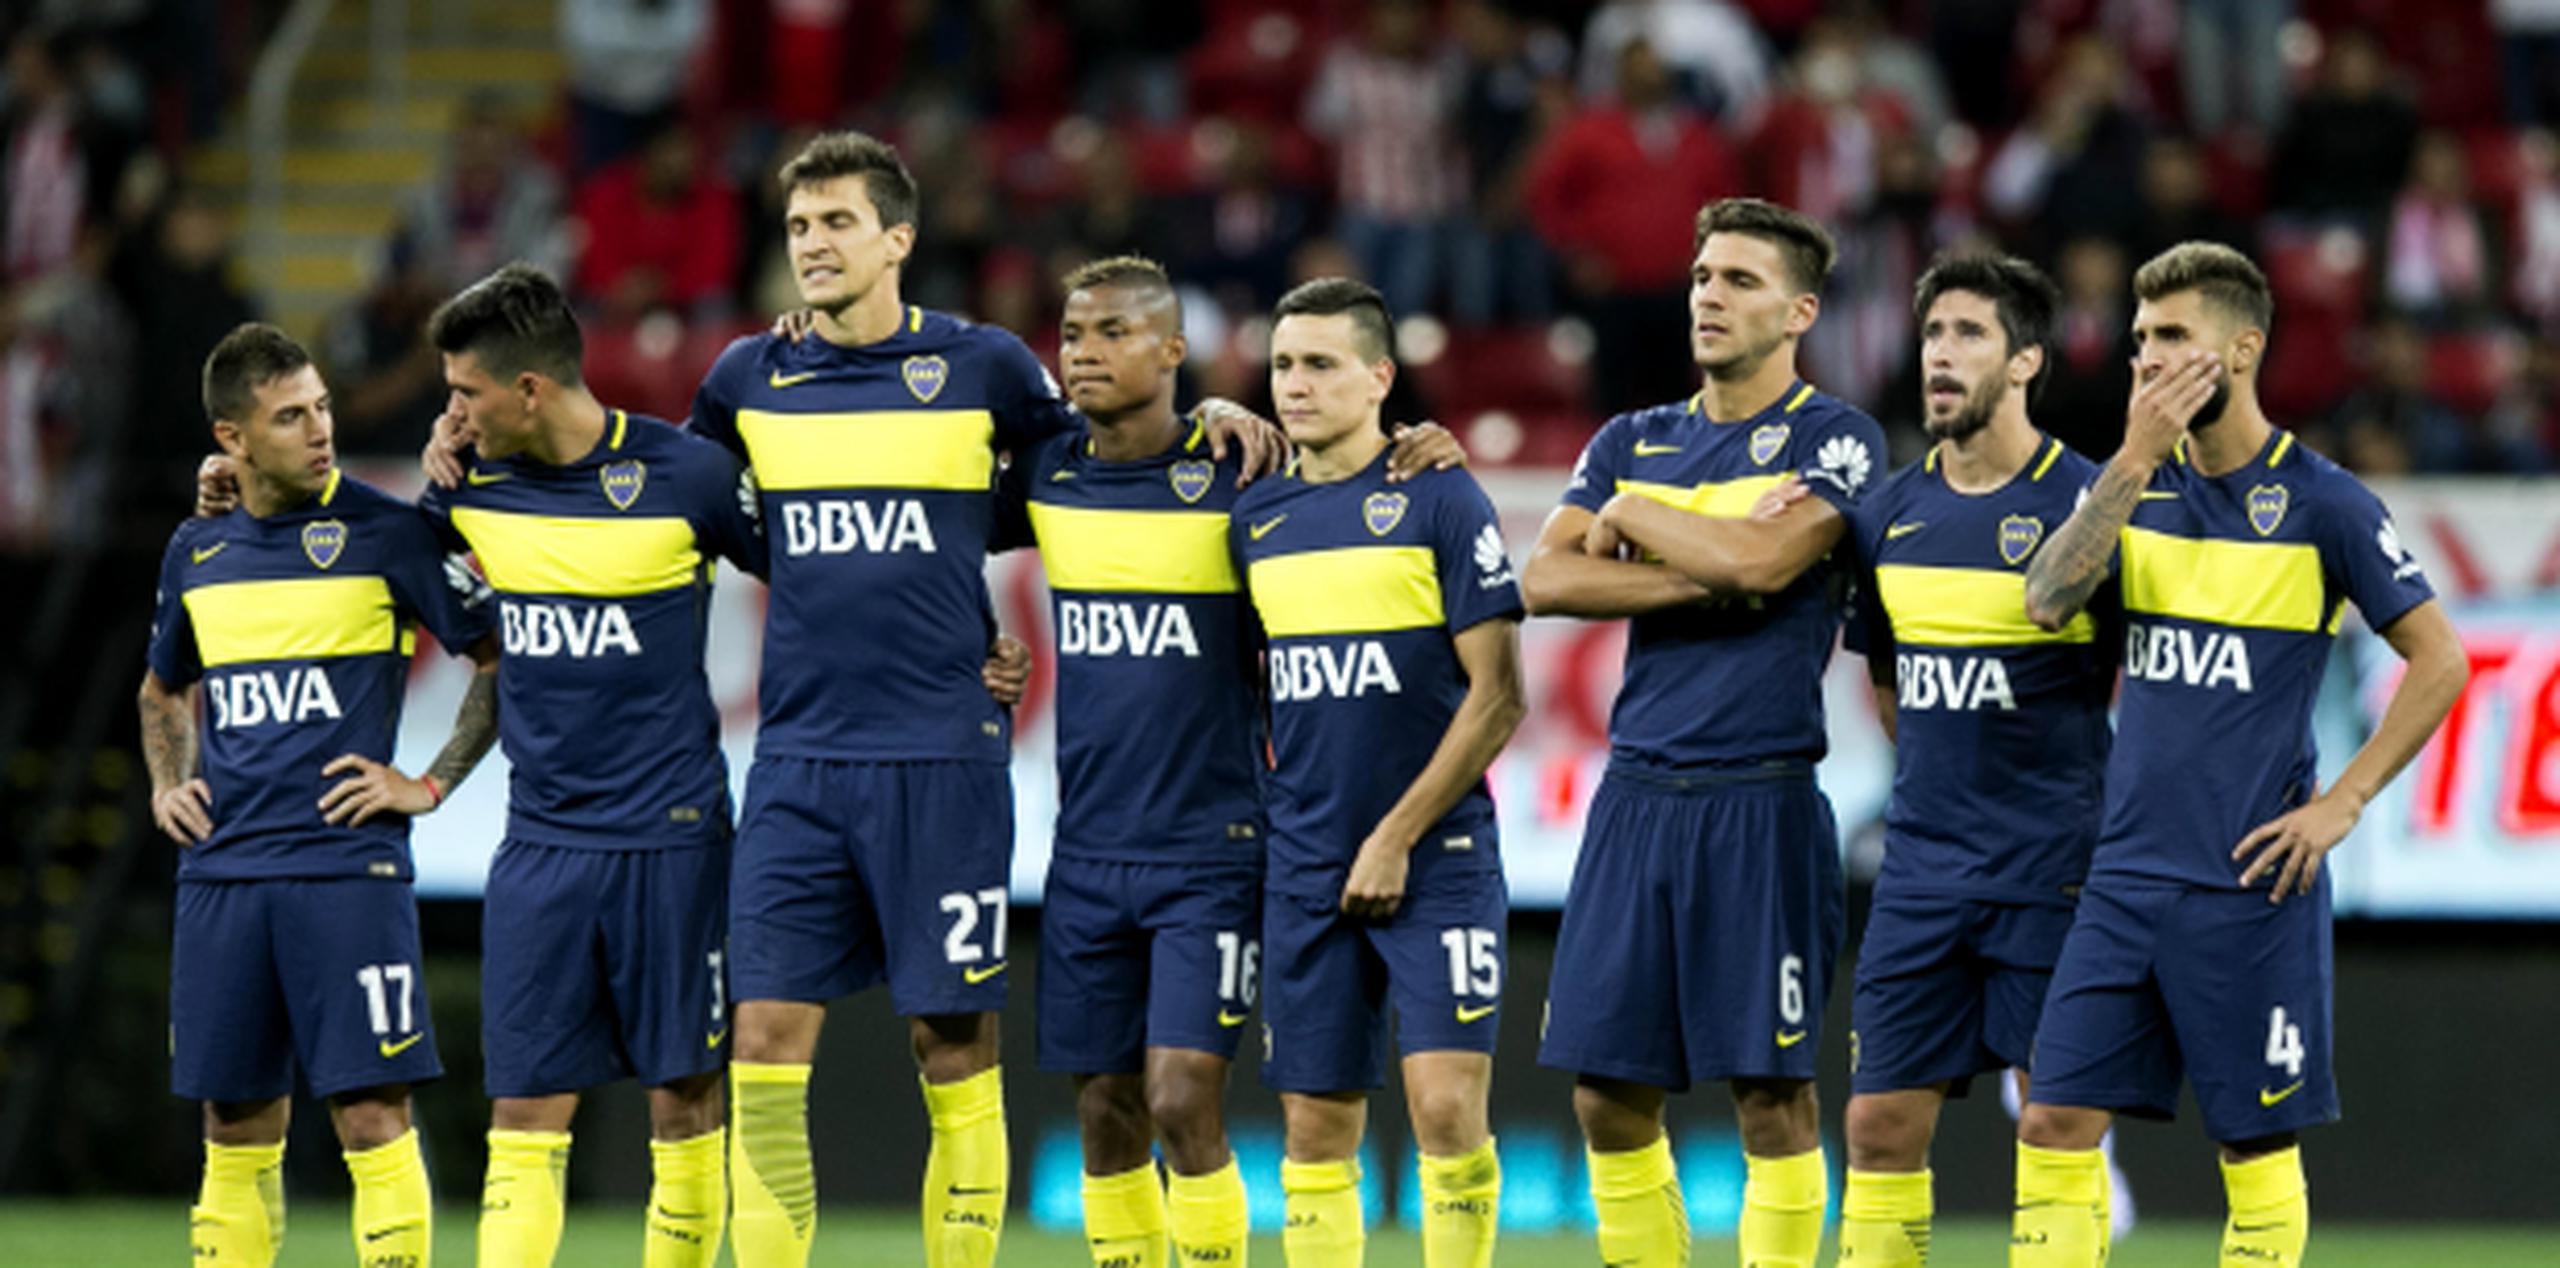 Jugadores del Boca Juniors. (Prensa Asociada)